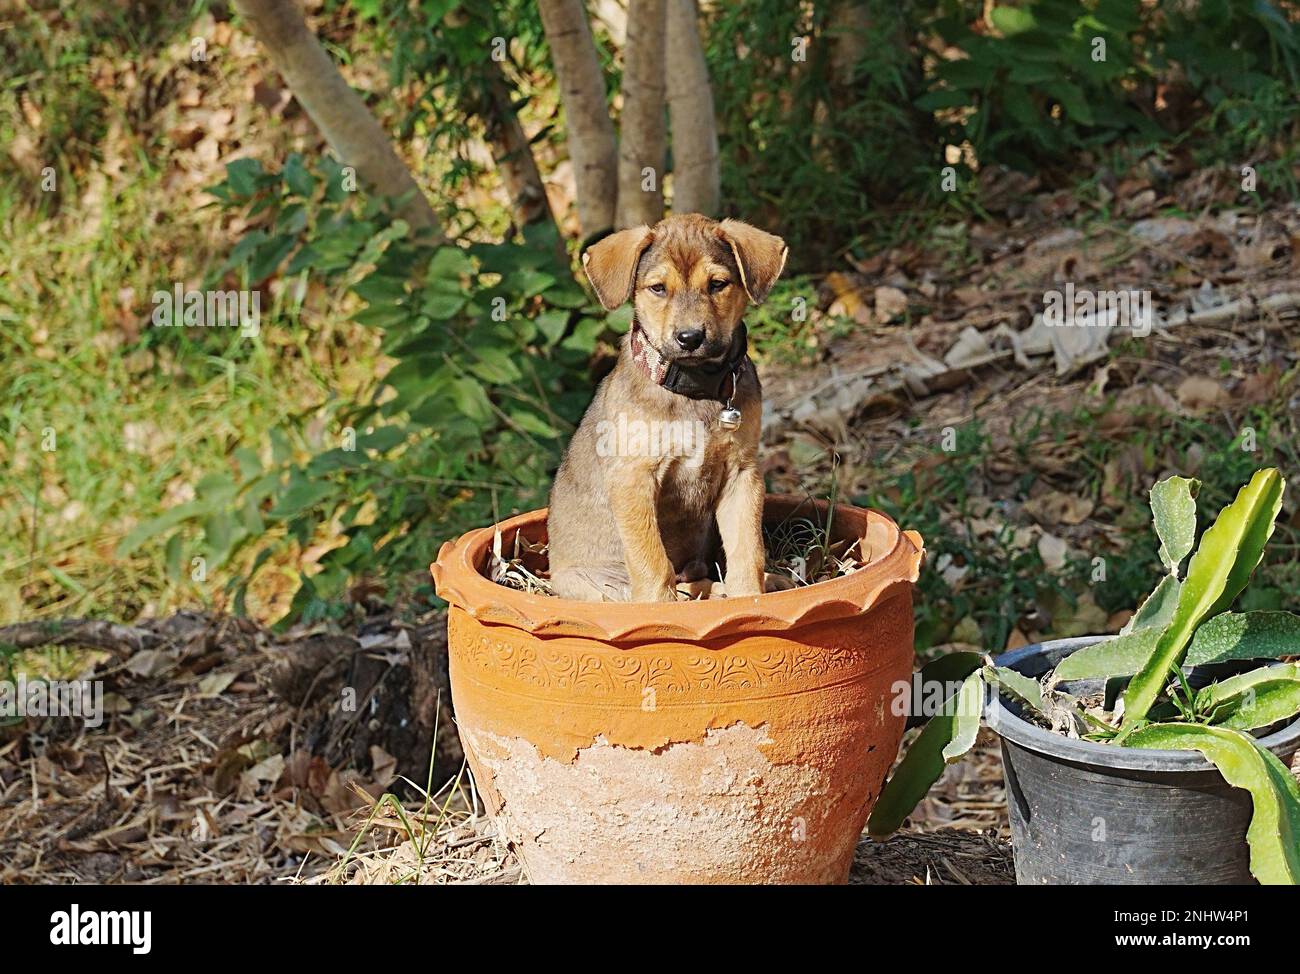 Ein brauner 8 Wochen alter Hund sitzt in einem Tonblumentopf und ist eine unscharfe natürliche Landschaft mit verschiedenen Bäumen Stockfoto